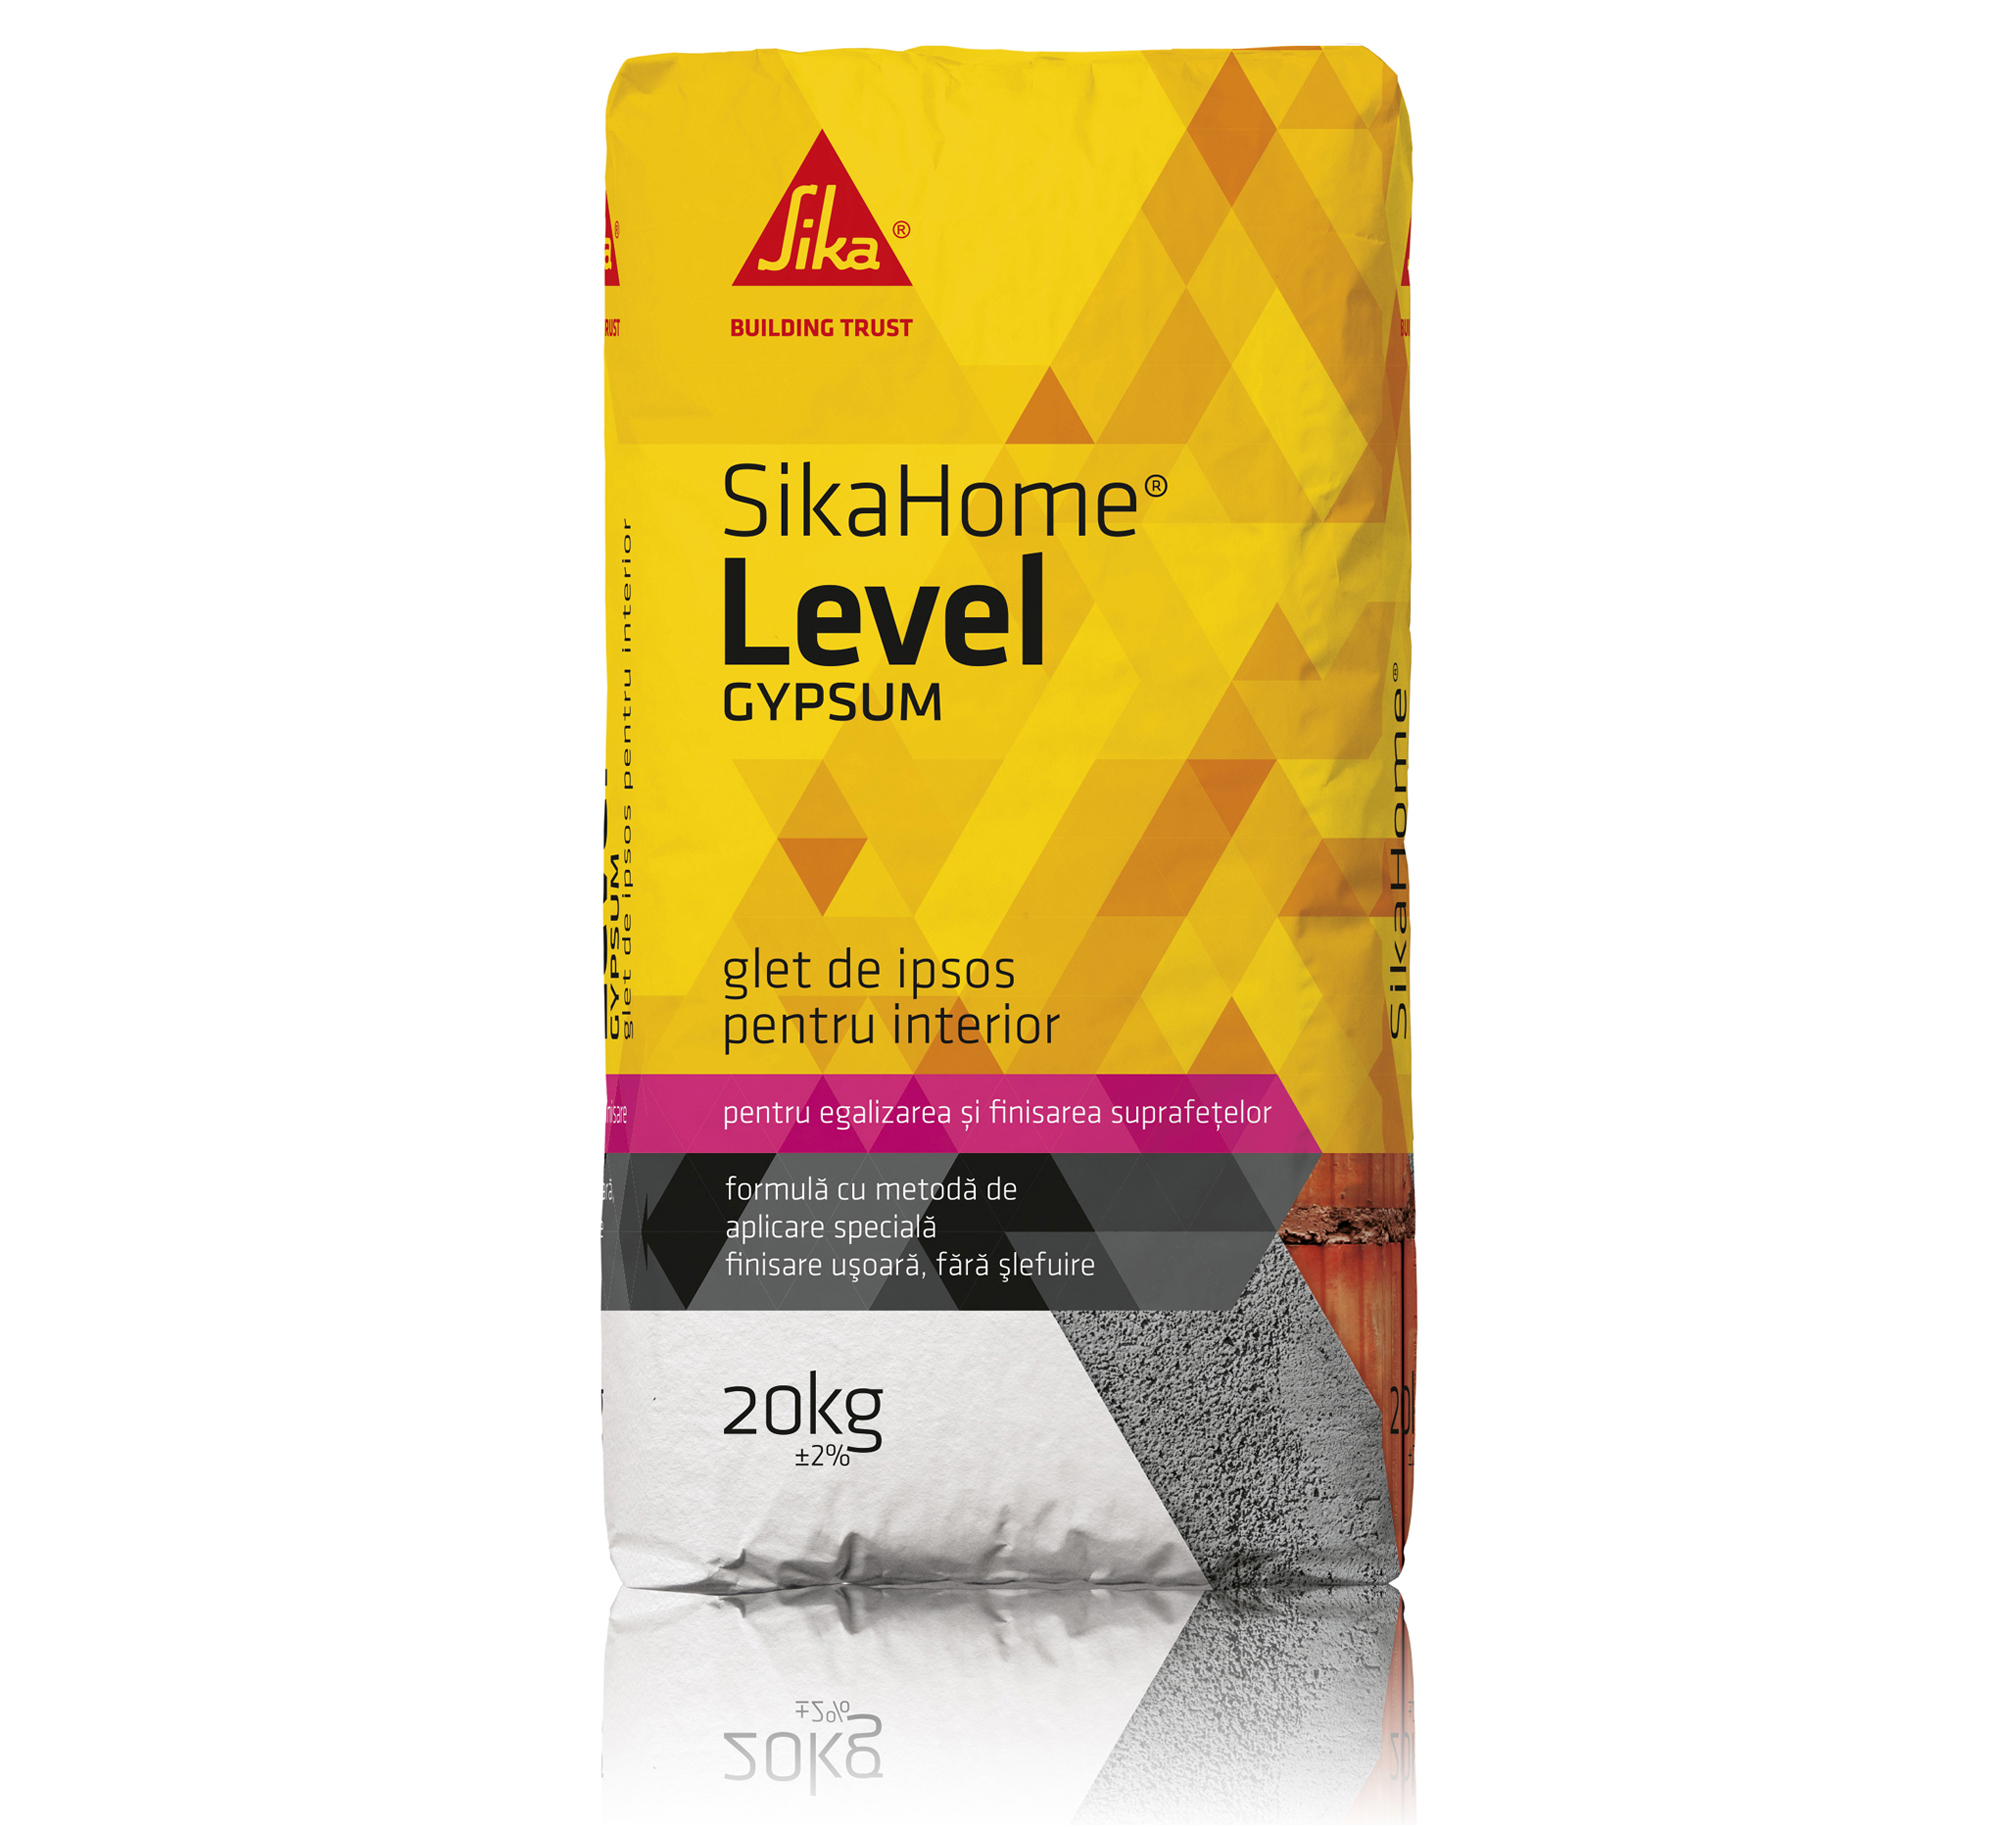 SikaHome Level Gypsum - SikaHome Level Gypsum